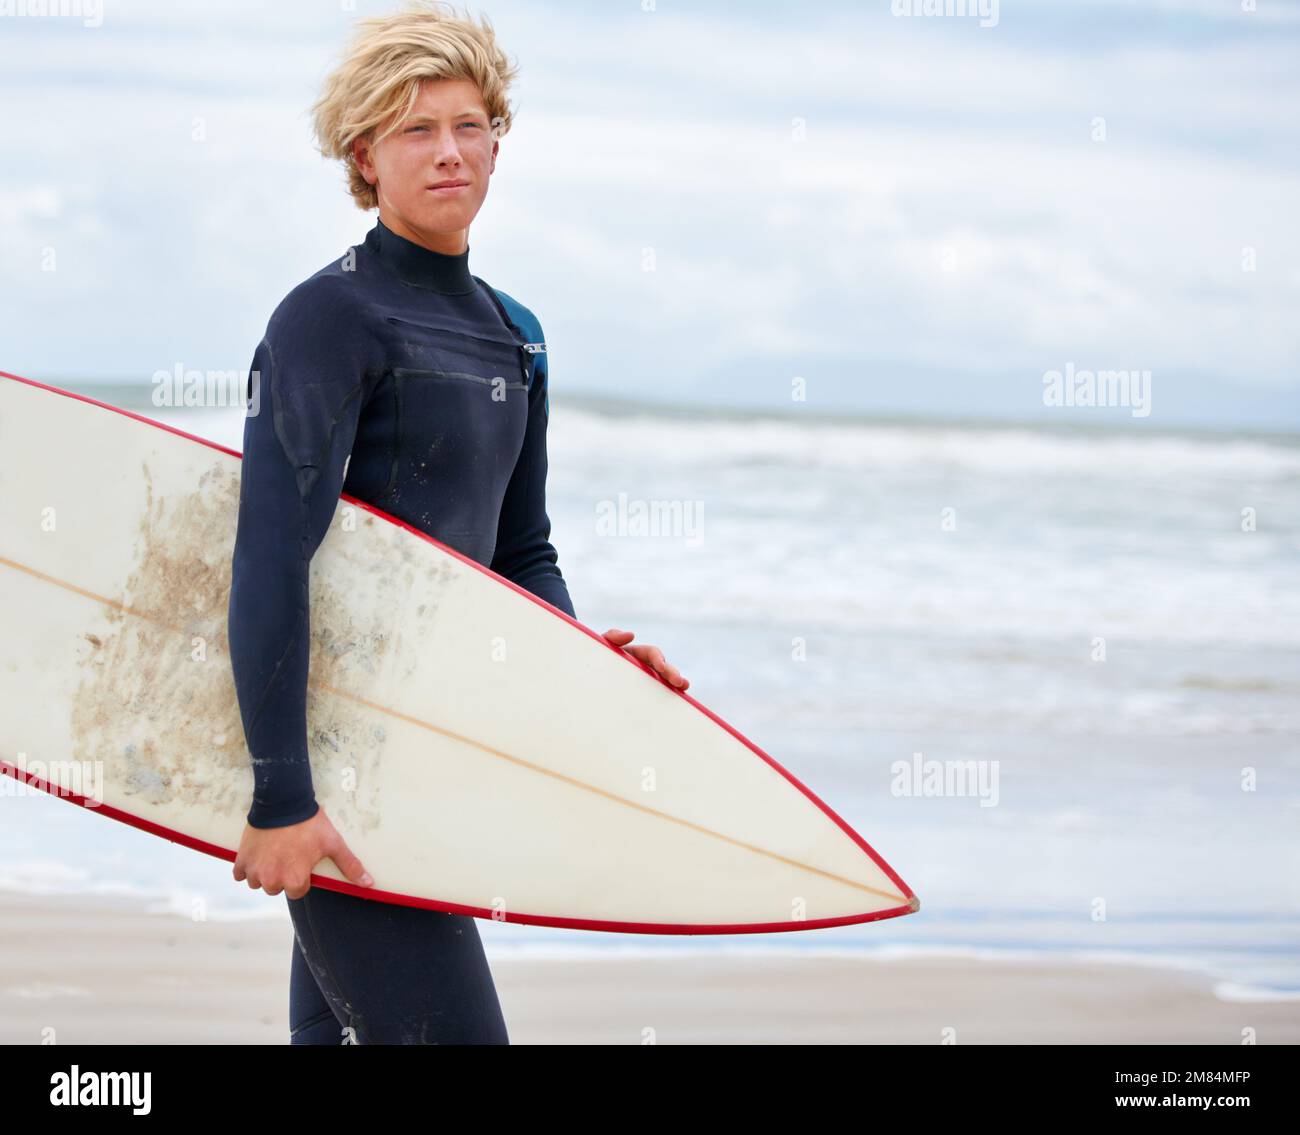 È sempre una buona giornata per fare surf. Un giovane surfista in piedi sulla spiaggia con l'oceano sullo sfondo. Foto Stock